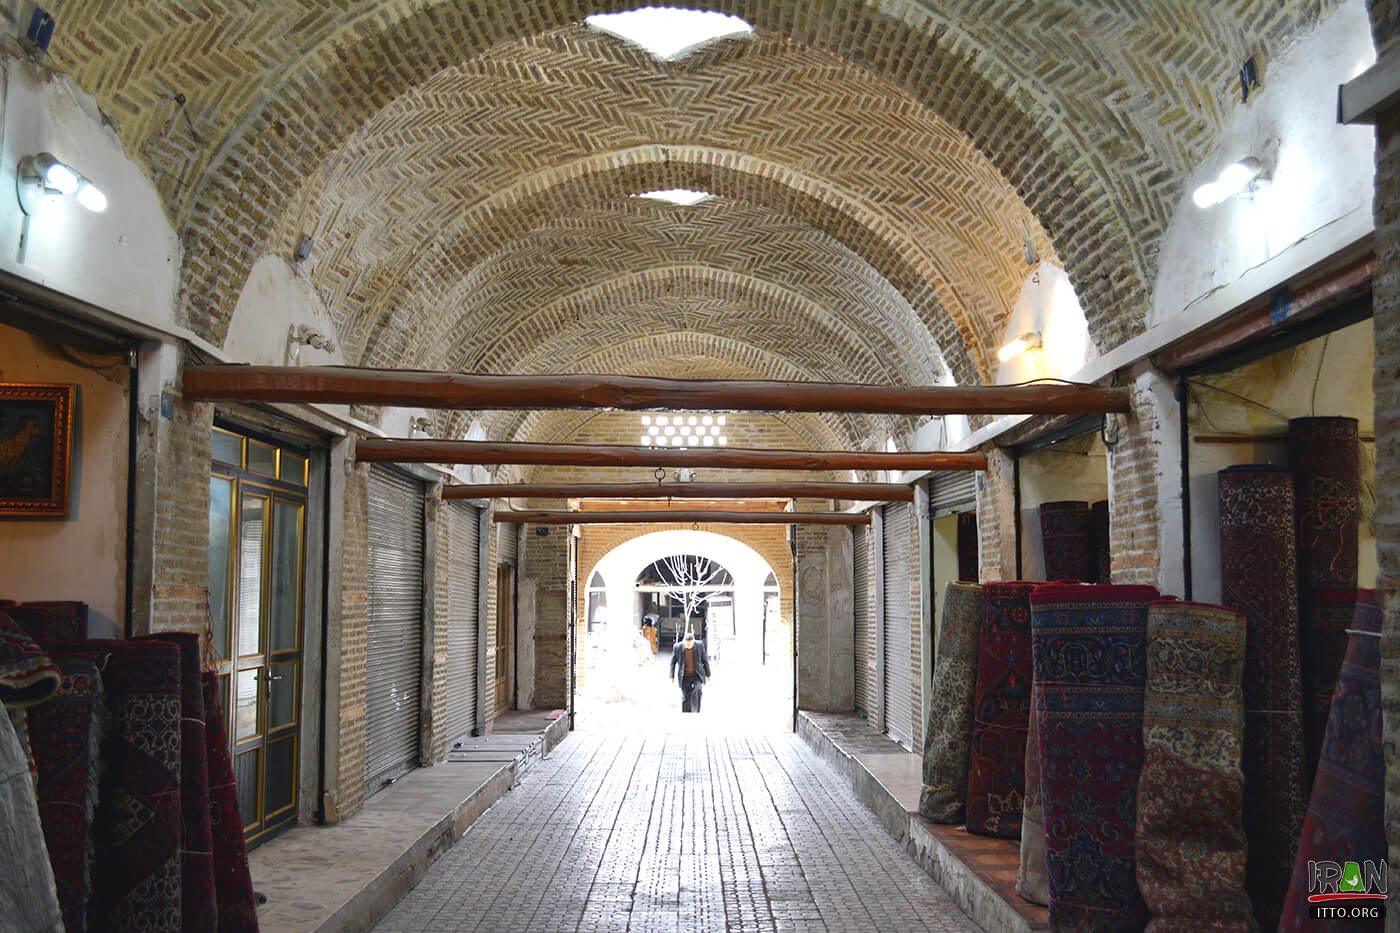 Zanjan Bazaar,Zanjan Historical Bazaar,بازار زنجان,بازار قدیمی زنجان,بازار تاریخی زنجان,zanjan province,zanjaan bazar,bazar zanjan,bazaar zanjan